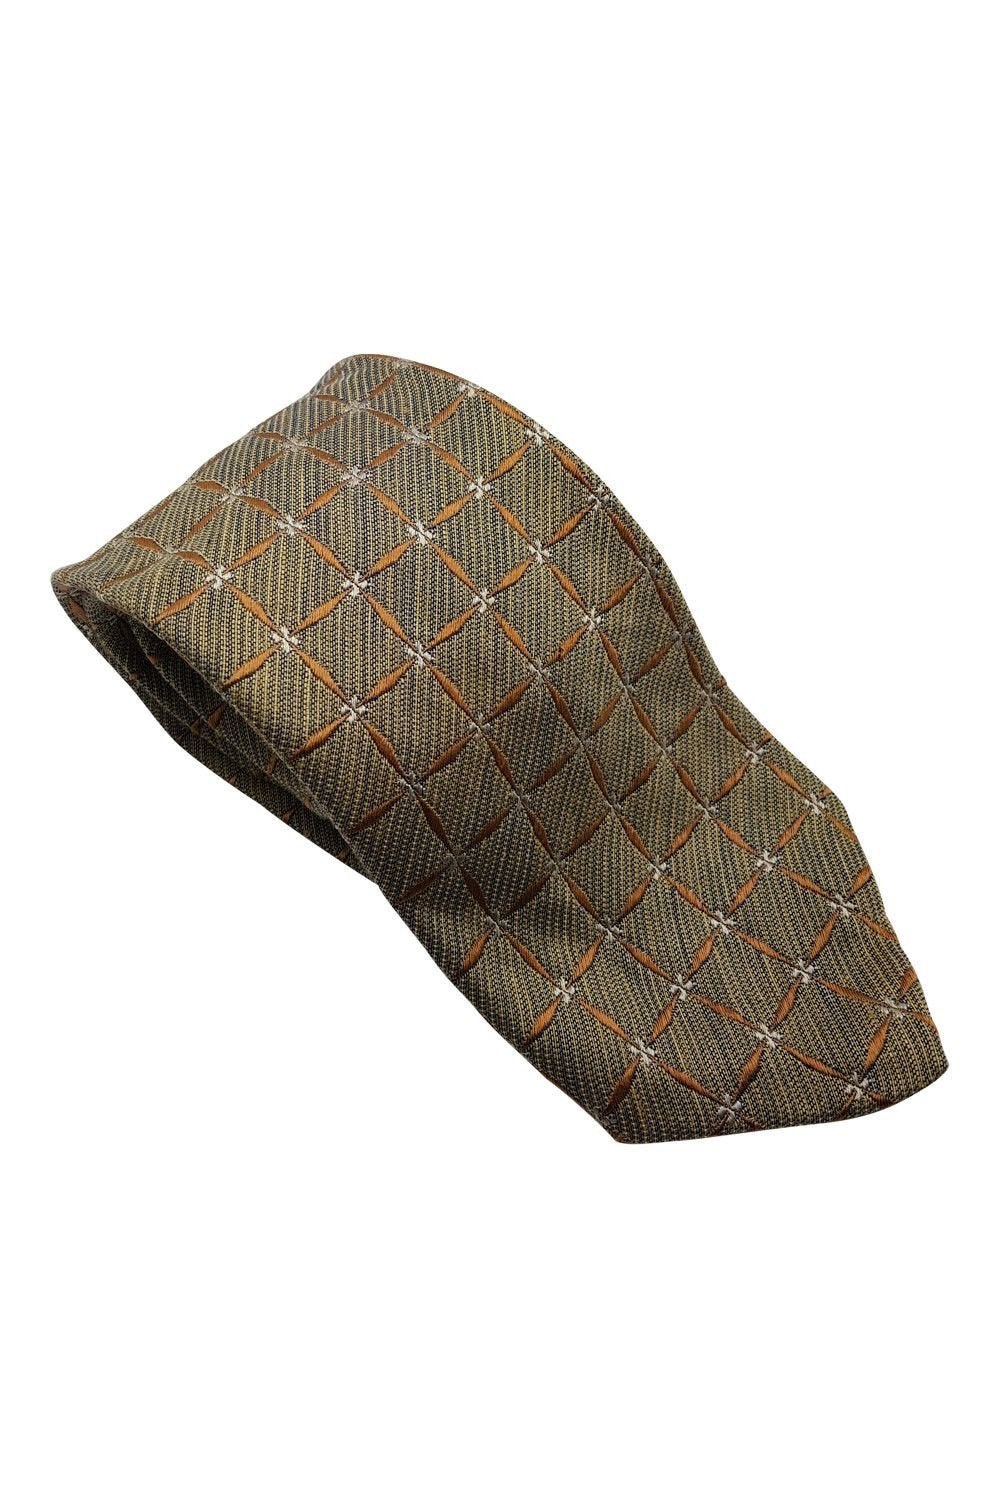 ERMENEGILDO ZEGNA Gold Woven Silk Blend Tie (60")-Ermenegildo Zegna-The Freperie